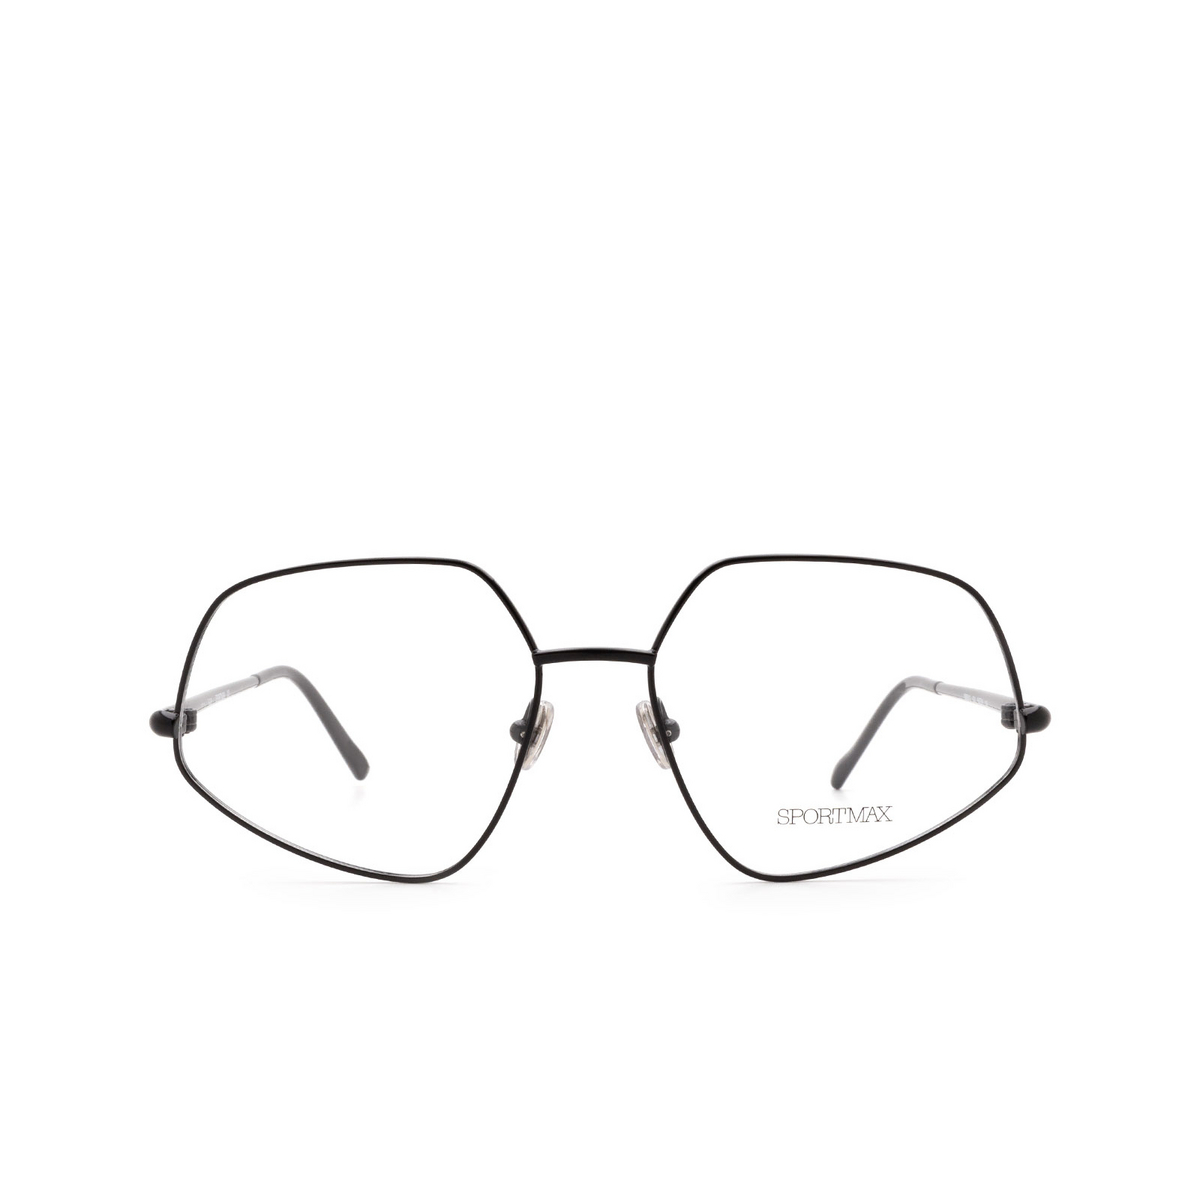 Sportmax® Square Eyeglasses: SM5010 color 001 Black - front view